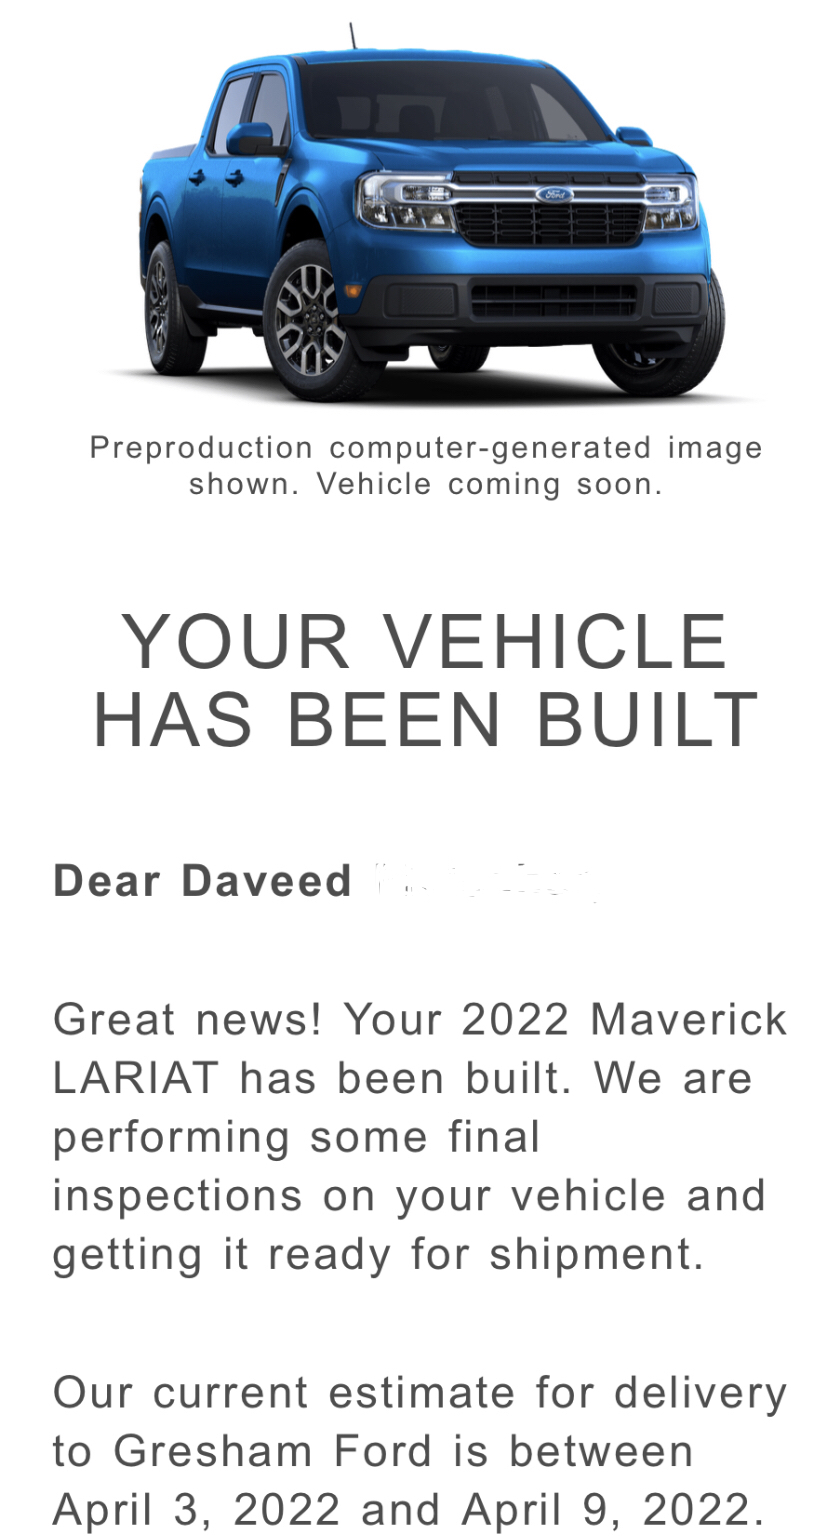 Ford Maverick Oregon 2C4BB60B-B456-46A8-A49D-D906D0CA98E9